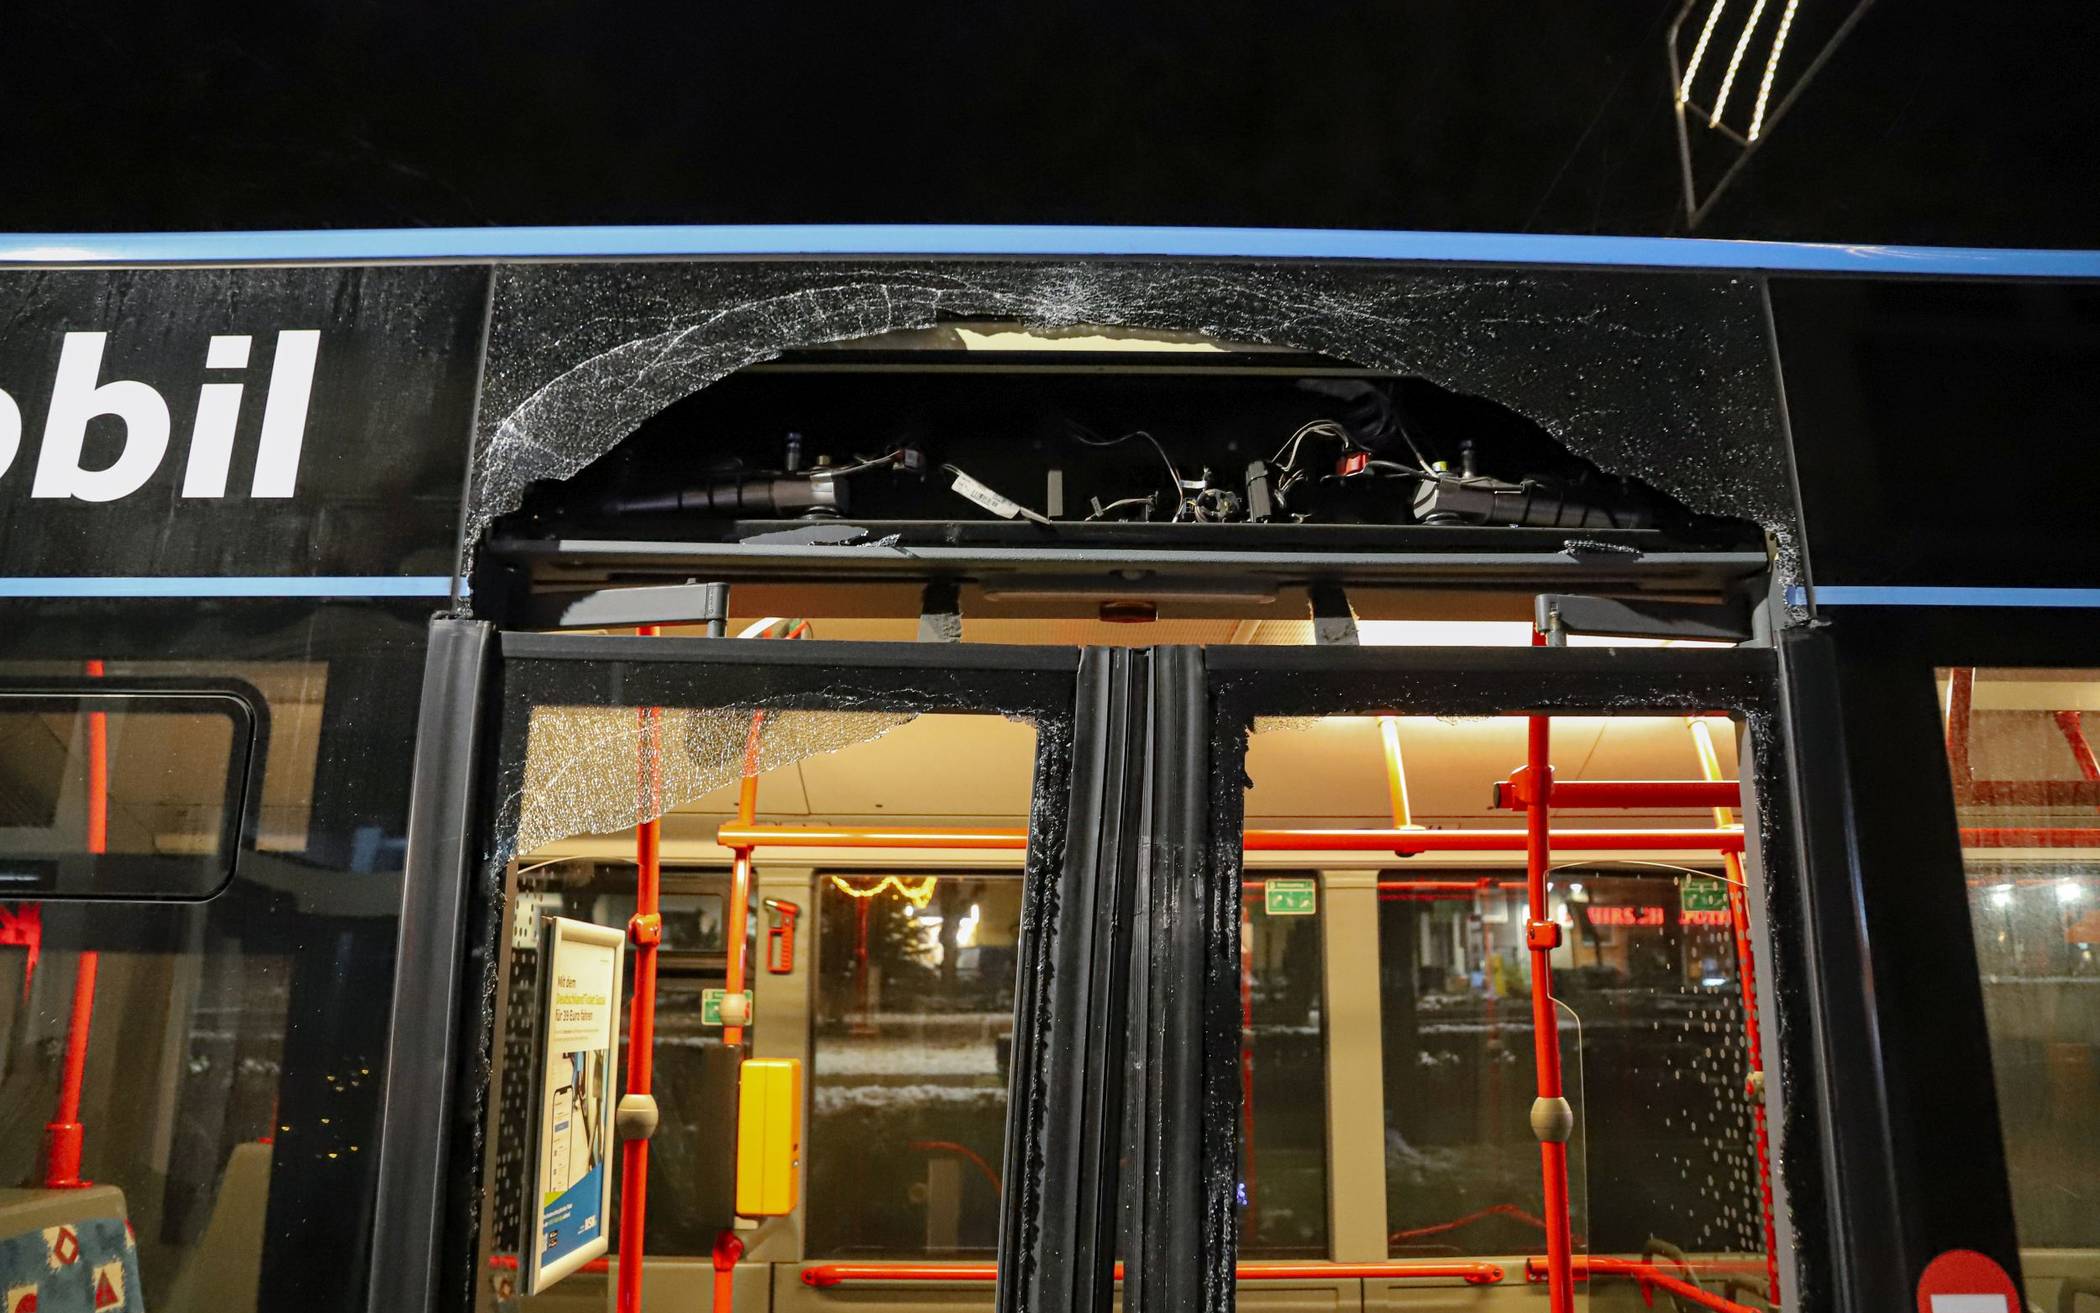 Bilder: Bus prallt in Wuppertal gegen Lieferdienst-Wagen​